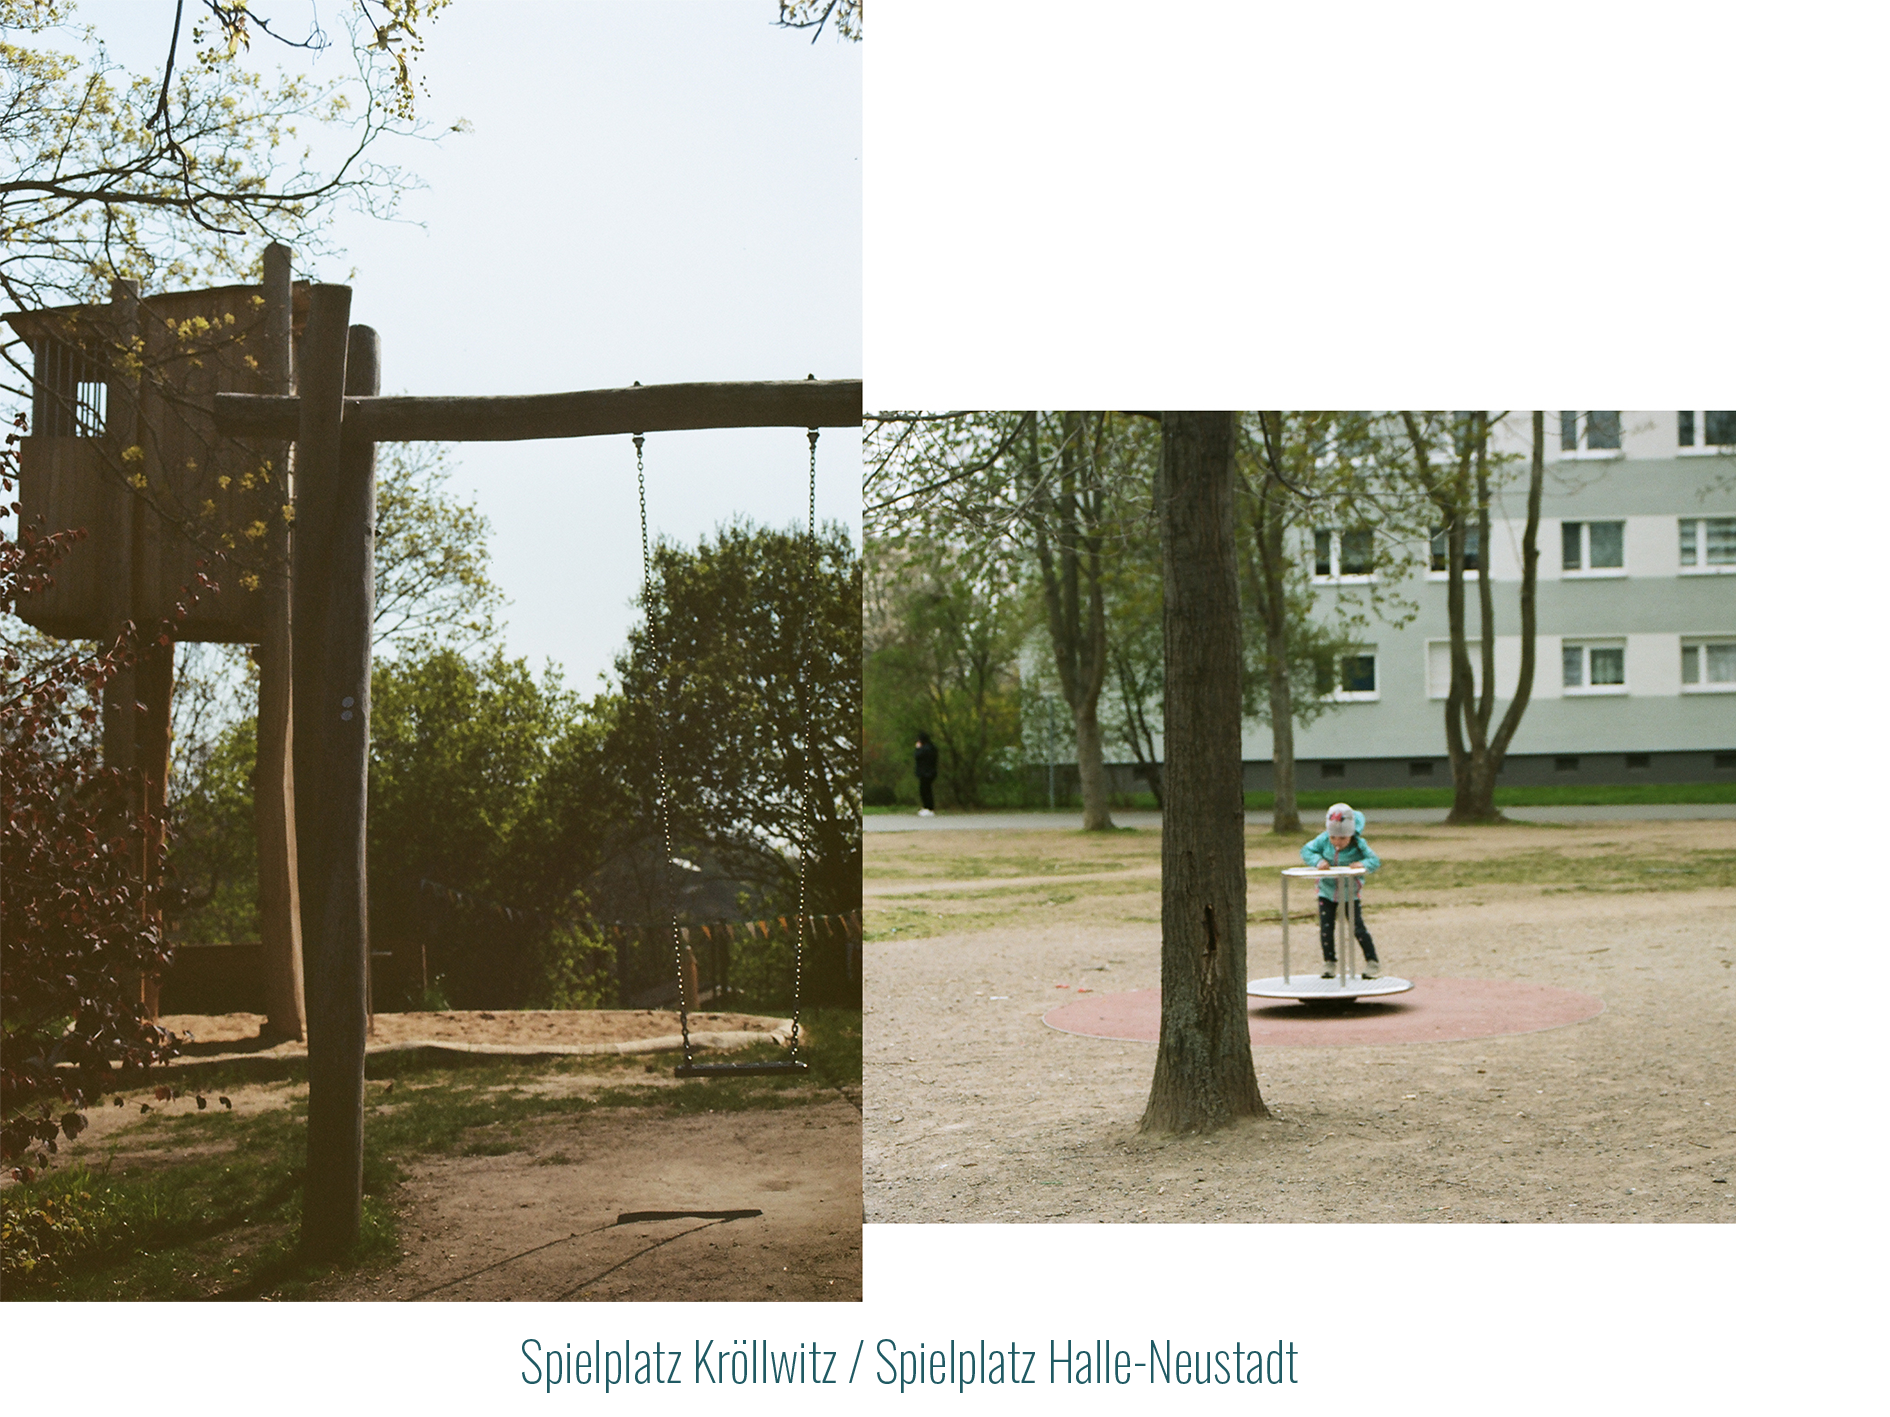 Spielplatz, Kröllwitz: In der Natur gelegner Holzspielplatz mit Schaukel und Sandkasten. 
            In Kontrast zu Spielplatz, Halle-Neustadt: einem Spielplatz zwischen Plattenbau, auf dem ein Kind auf einem Karussell steht.